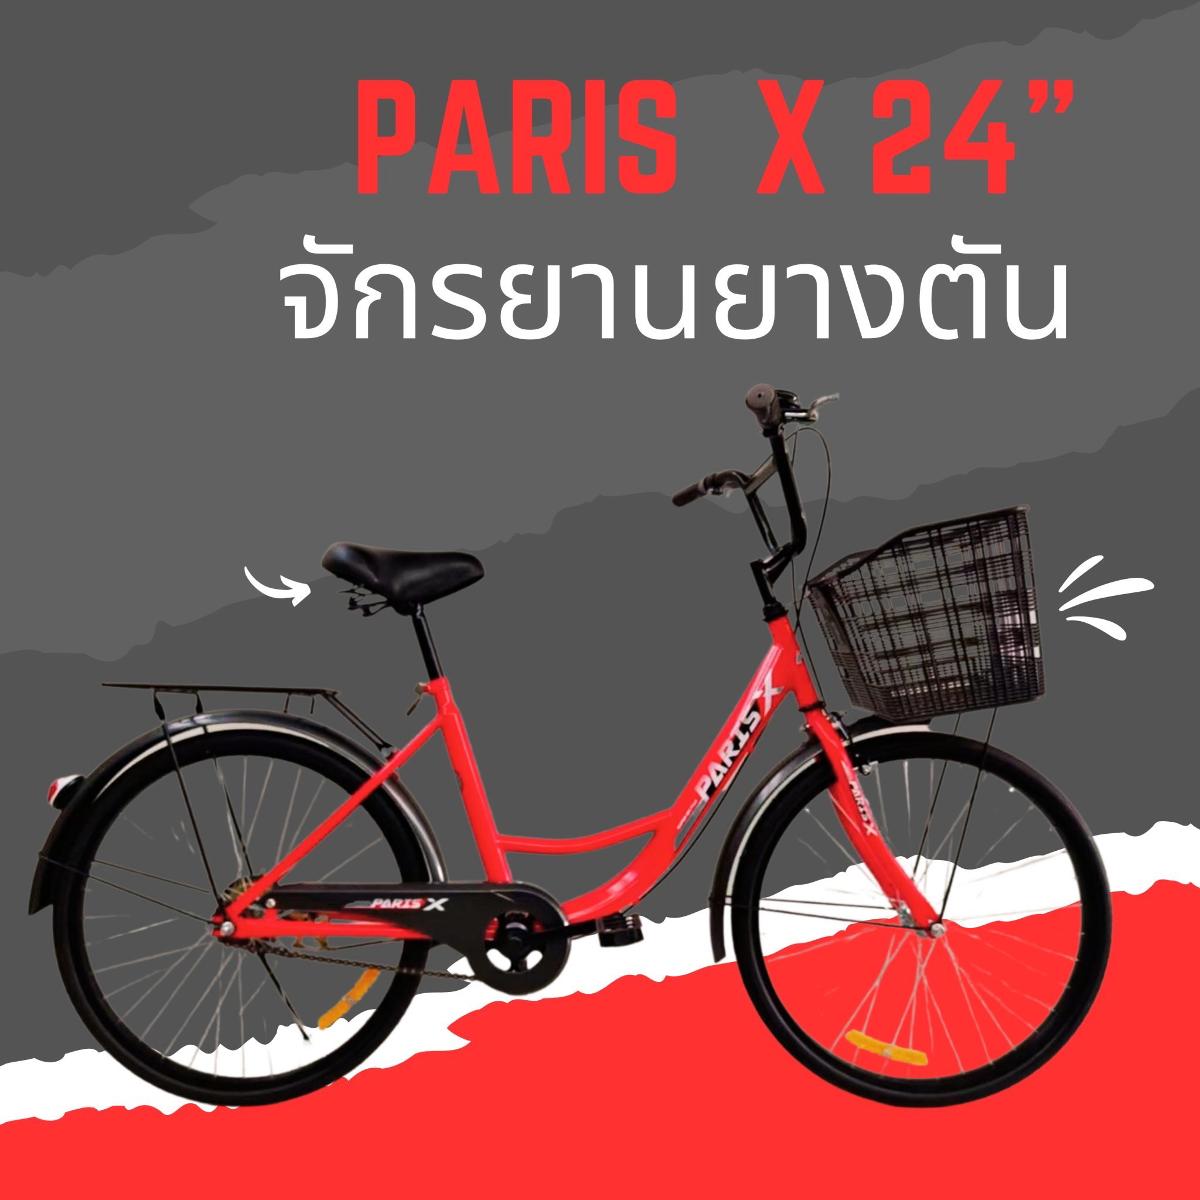 จักรยานแม่บ้าน ยางตัน PARIS X 24 นี้ว